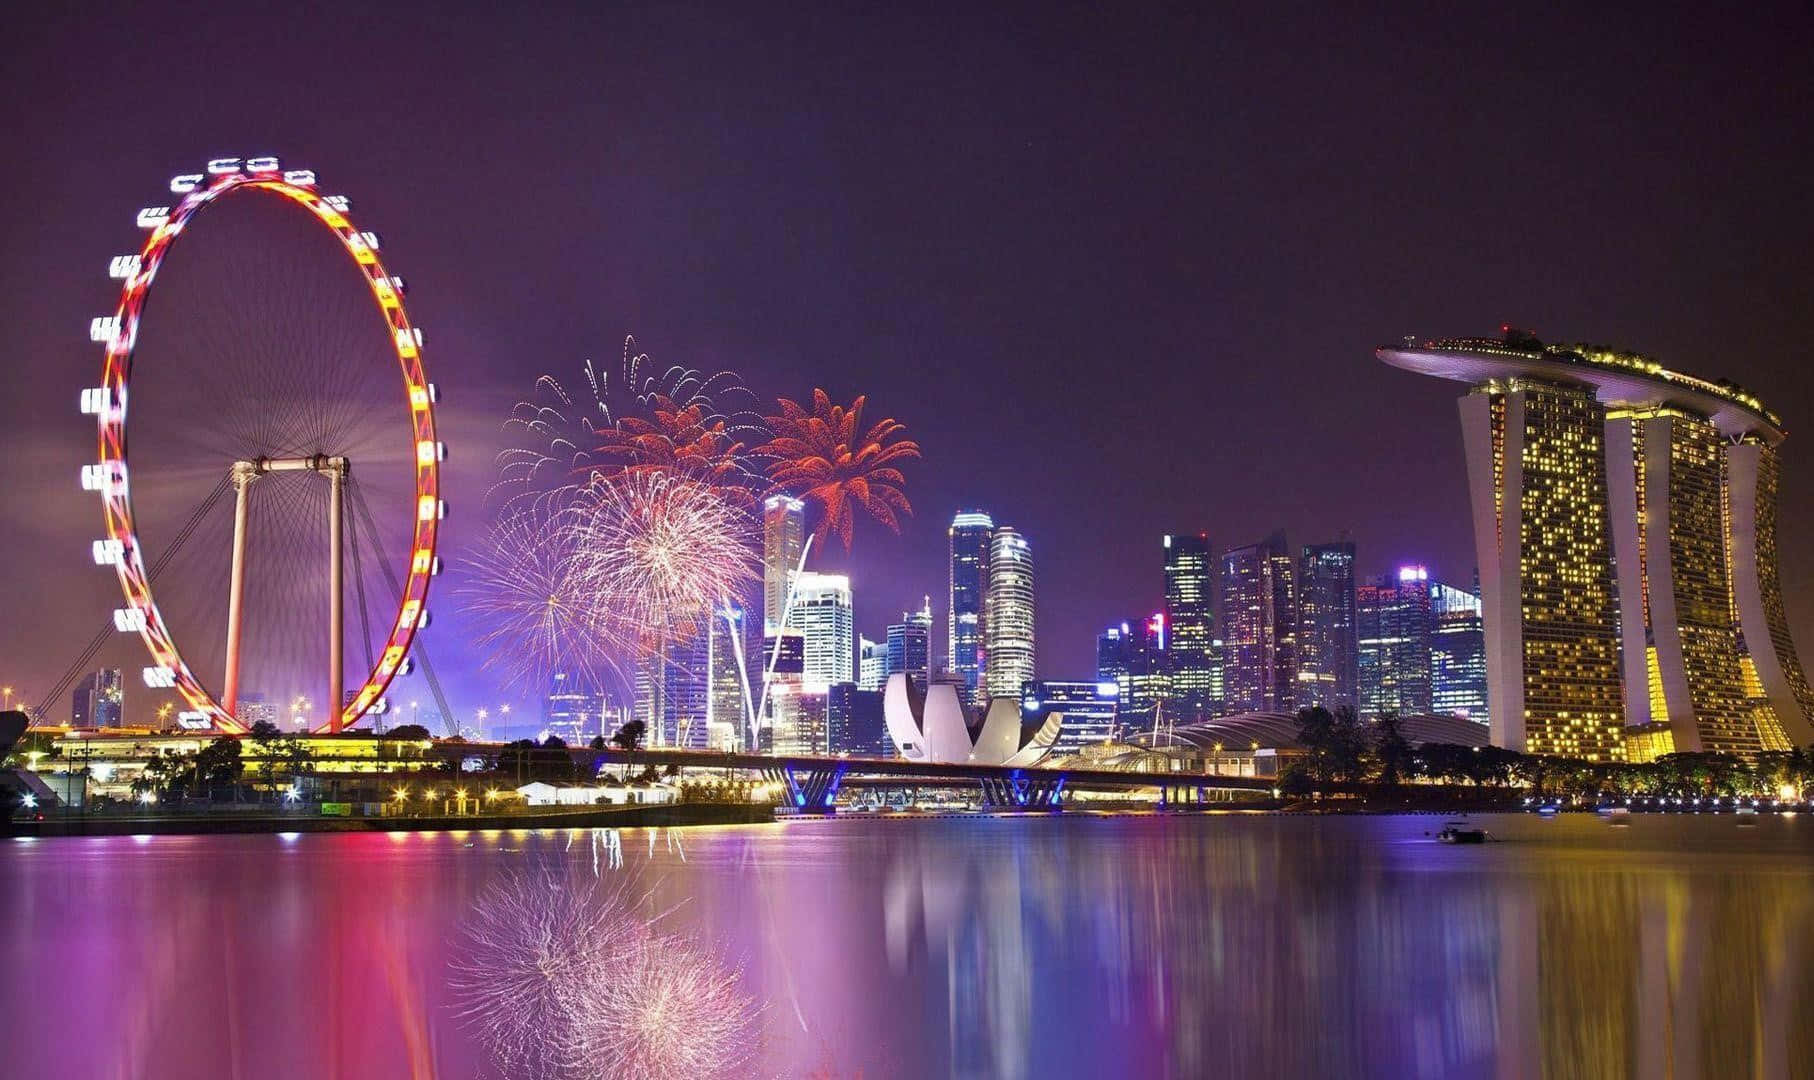 Illuminated at night, the iconic skyline of Singapore